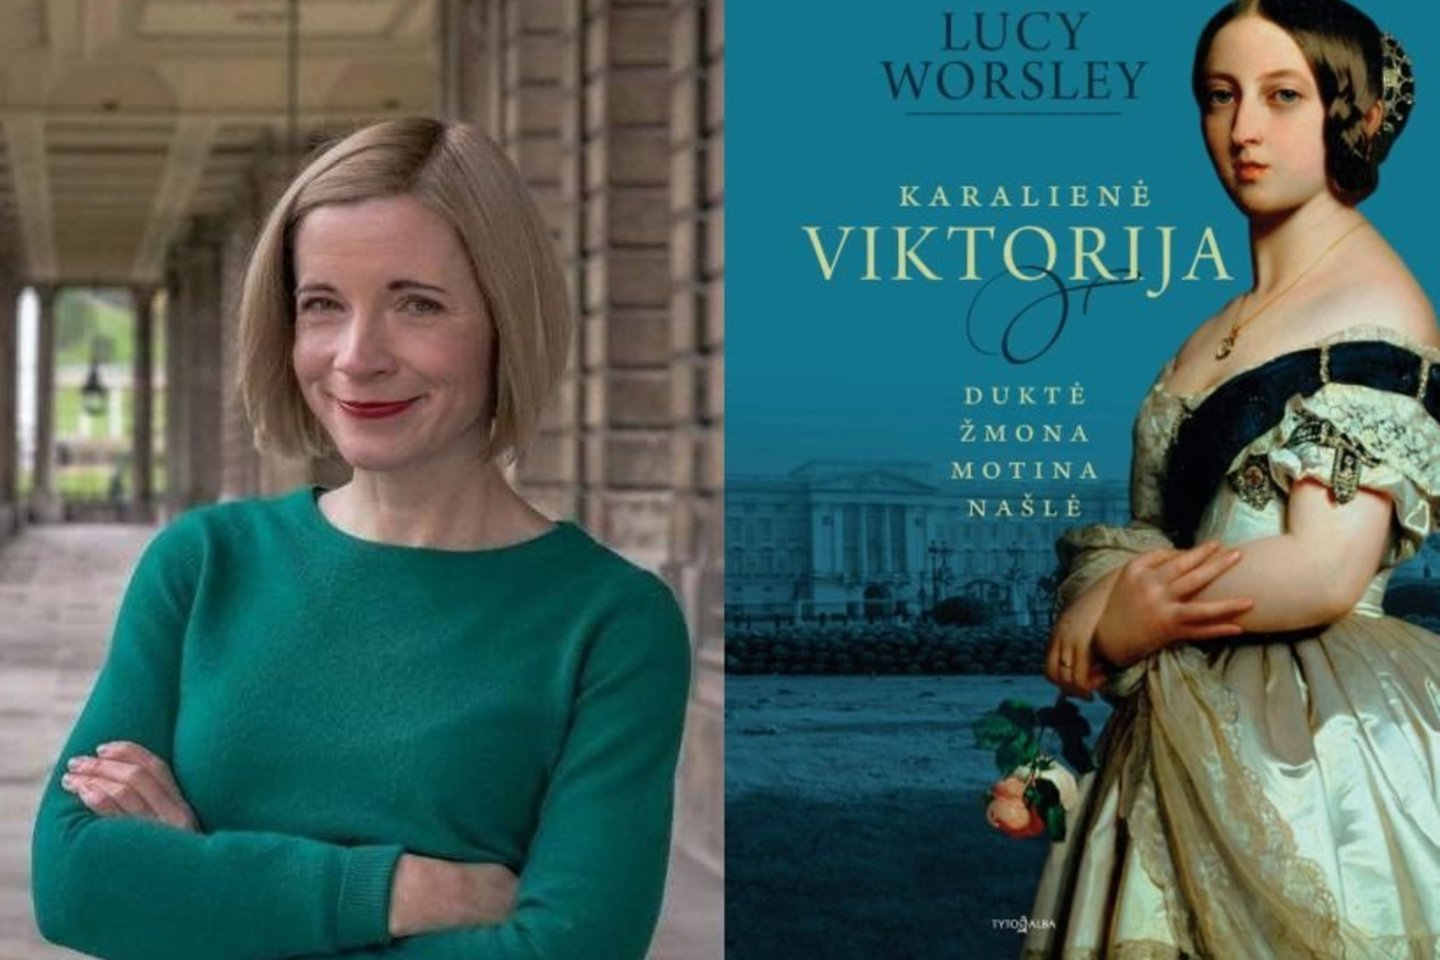 L.Worsley knyga „Karalienė Viktorija“ – intriguojantis vienos garsiausių visų laikų lyderių portretas.<br> Nuotr. iš asmeninio archyvo